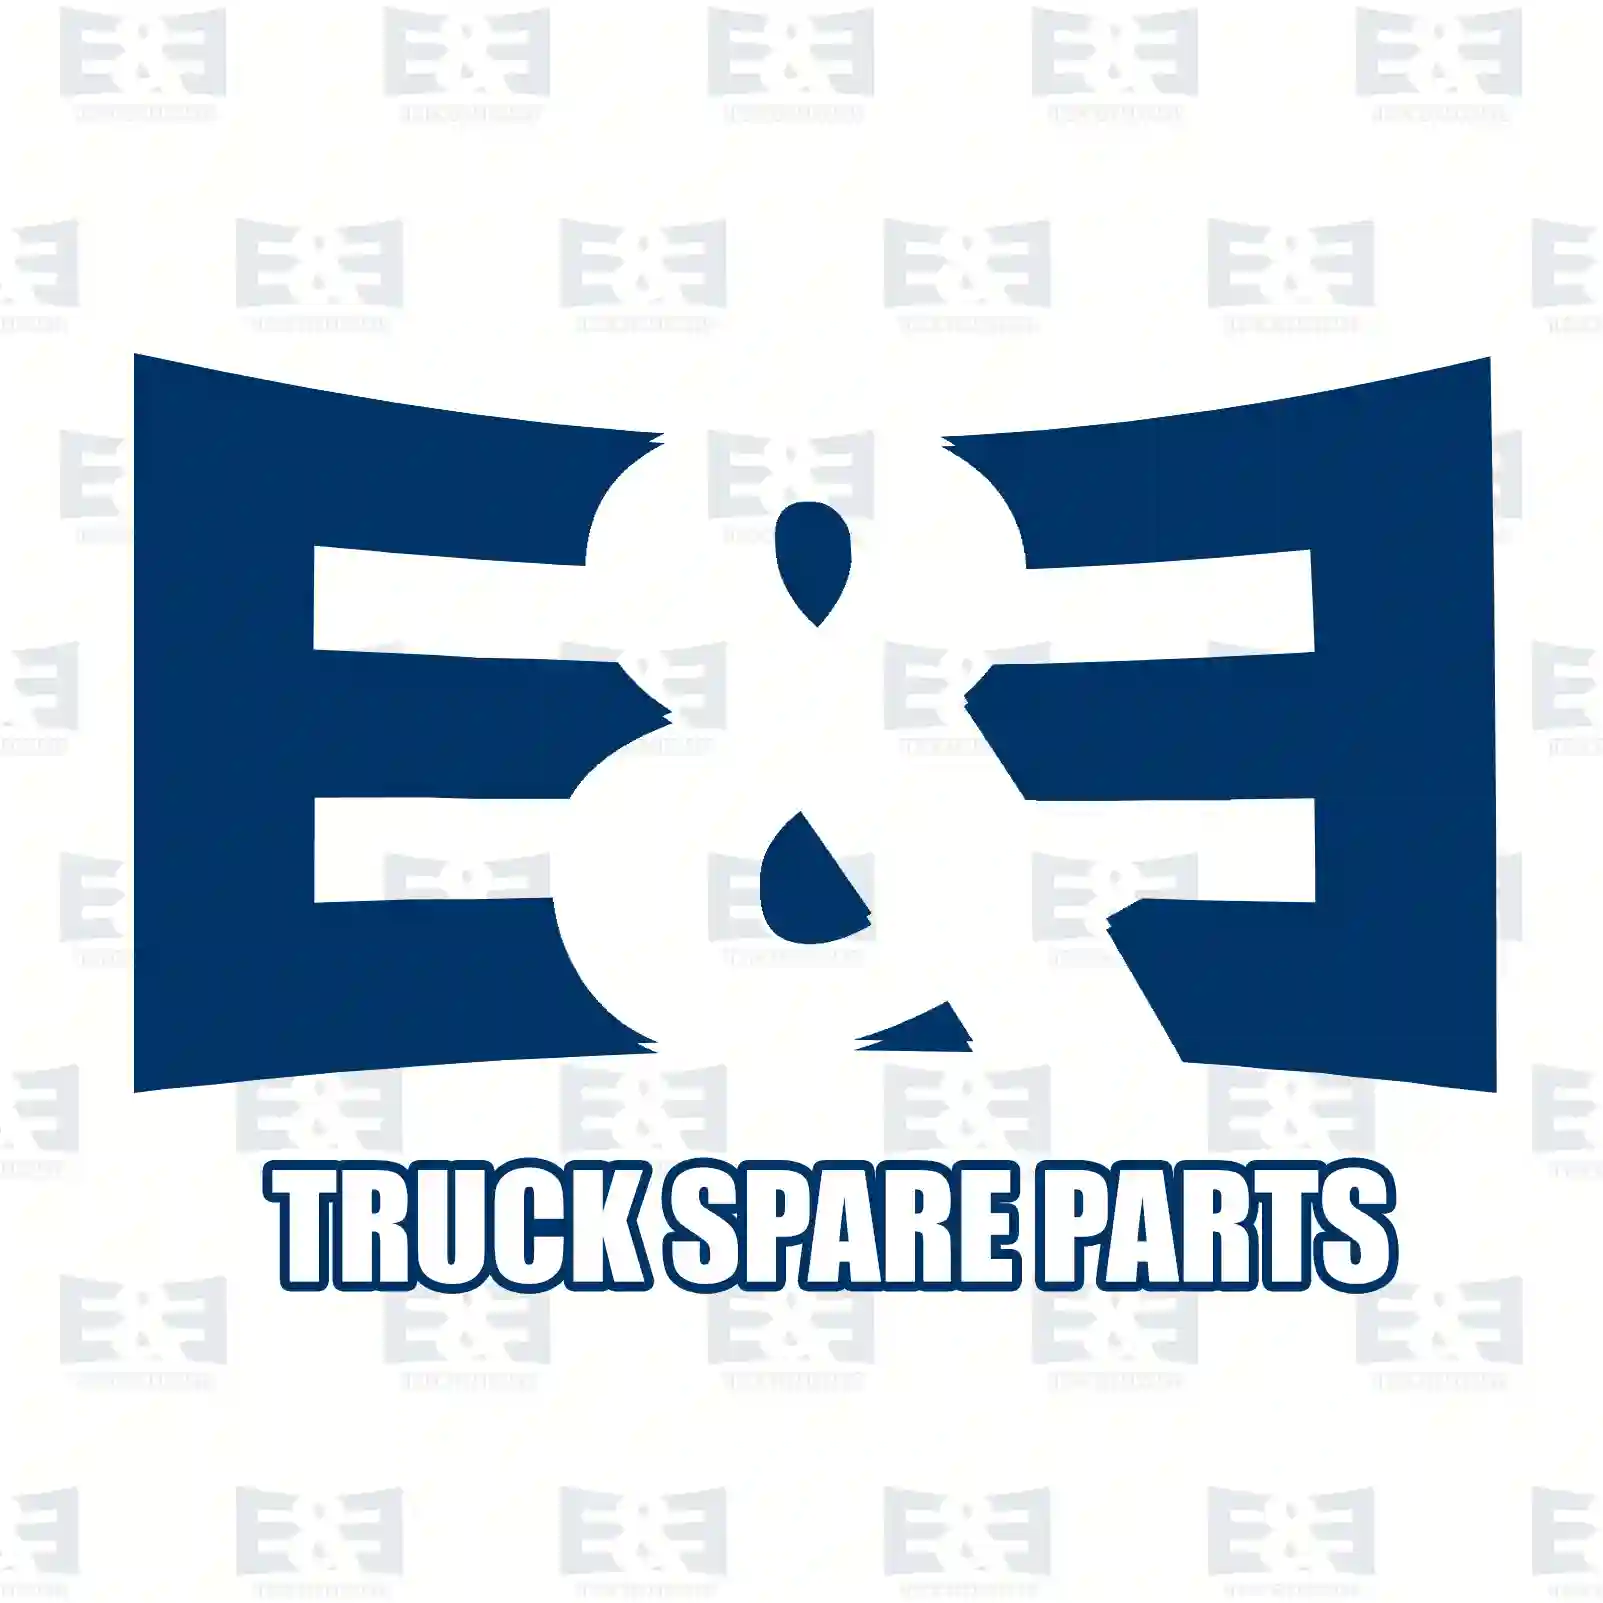 Propeller shaft, 2E2276732, 500391625, 504019 ||  2E2276732 E&E Truck Spare Parts | Truck Spare Parts, Auotomotive Spare Parts Propeller shaft, 2E2276732, 500391625, 504019 ||  2E2276732 E&E Truck Spare Parts | Truck Spare Parts, Auotomotive Spare Parts